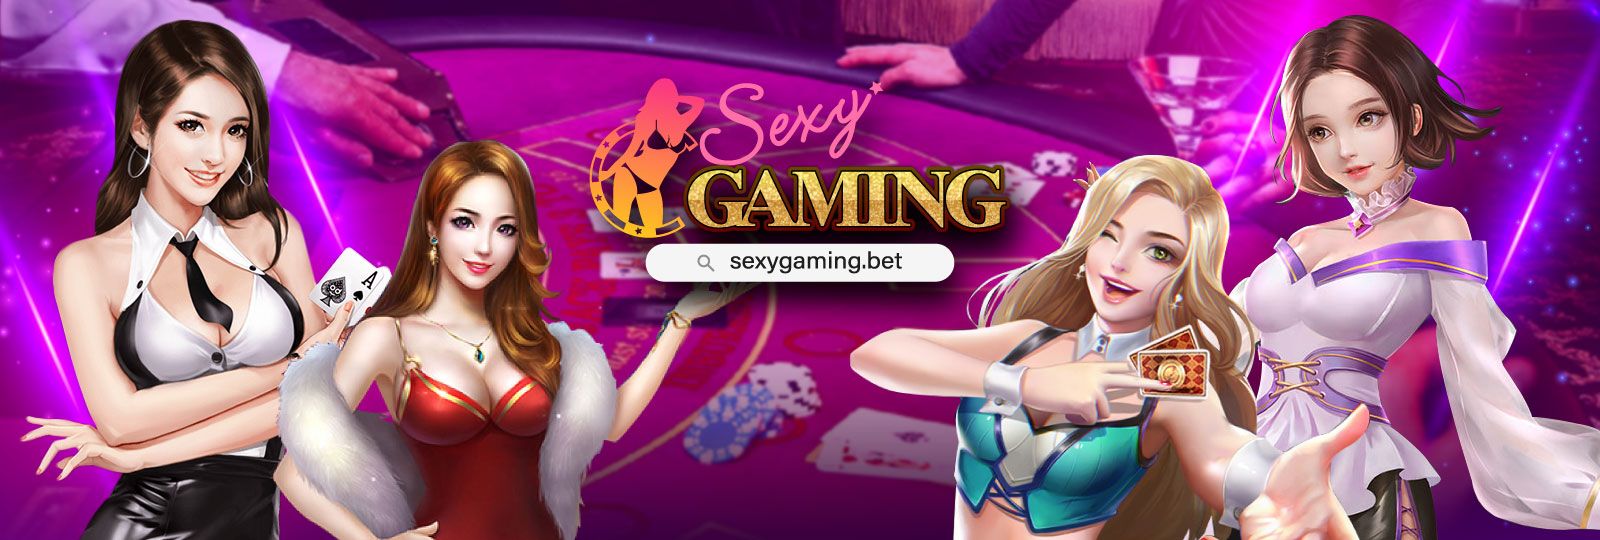 เว็บไซต์พนันที่ดีที่สุด casino SEXYGAMING พร้อมสาวสวยคอยให้บริการ